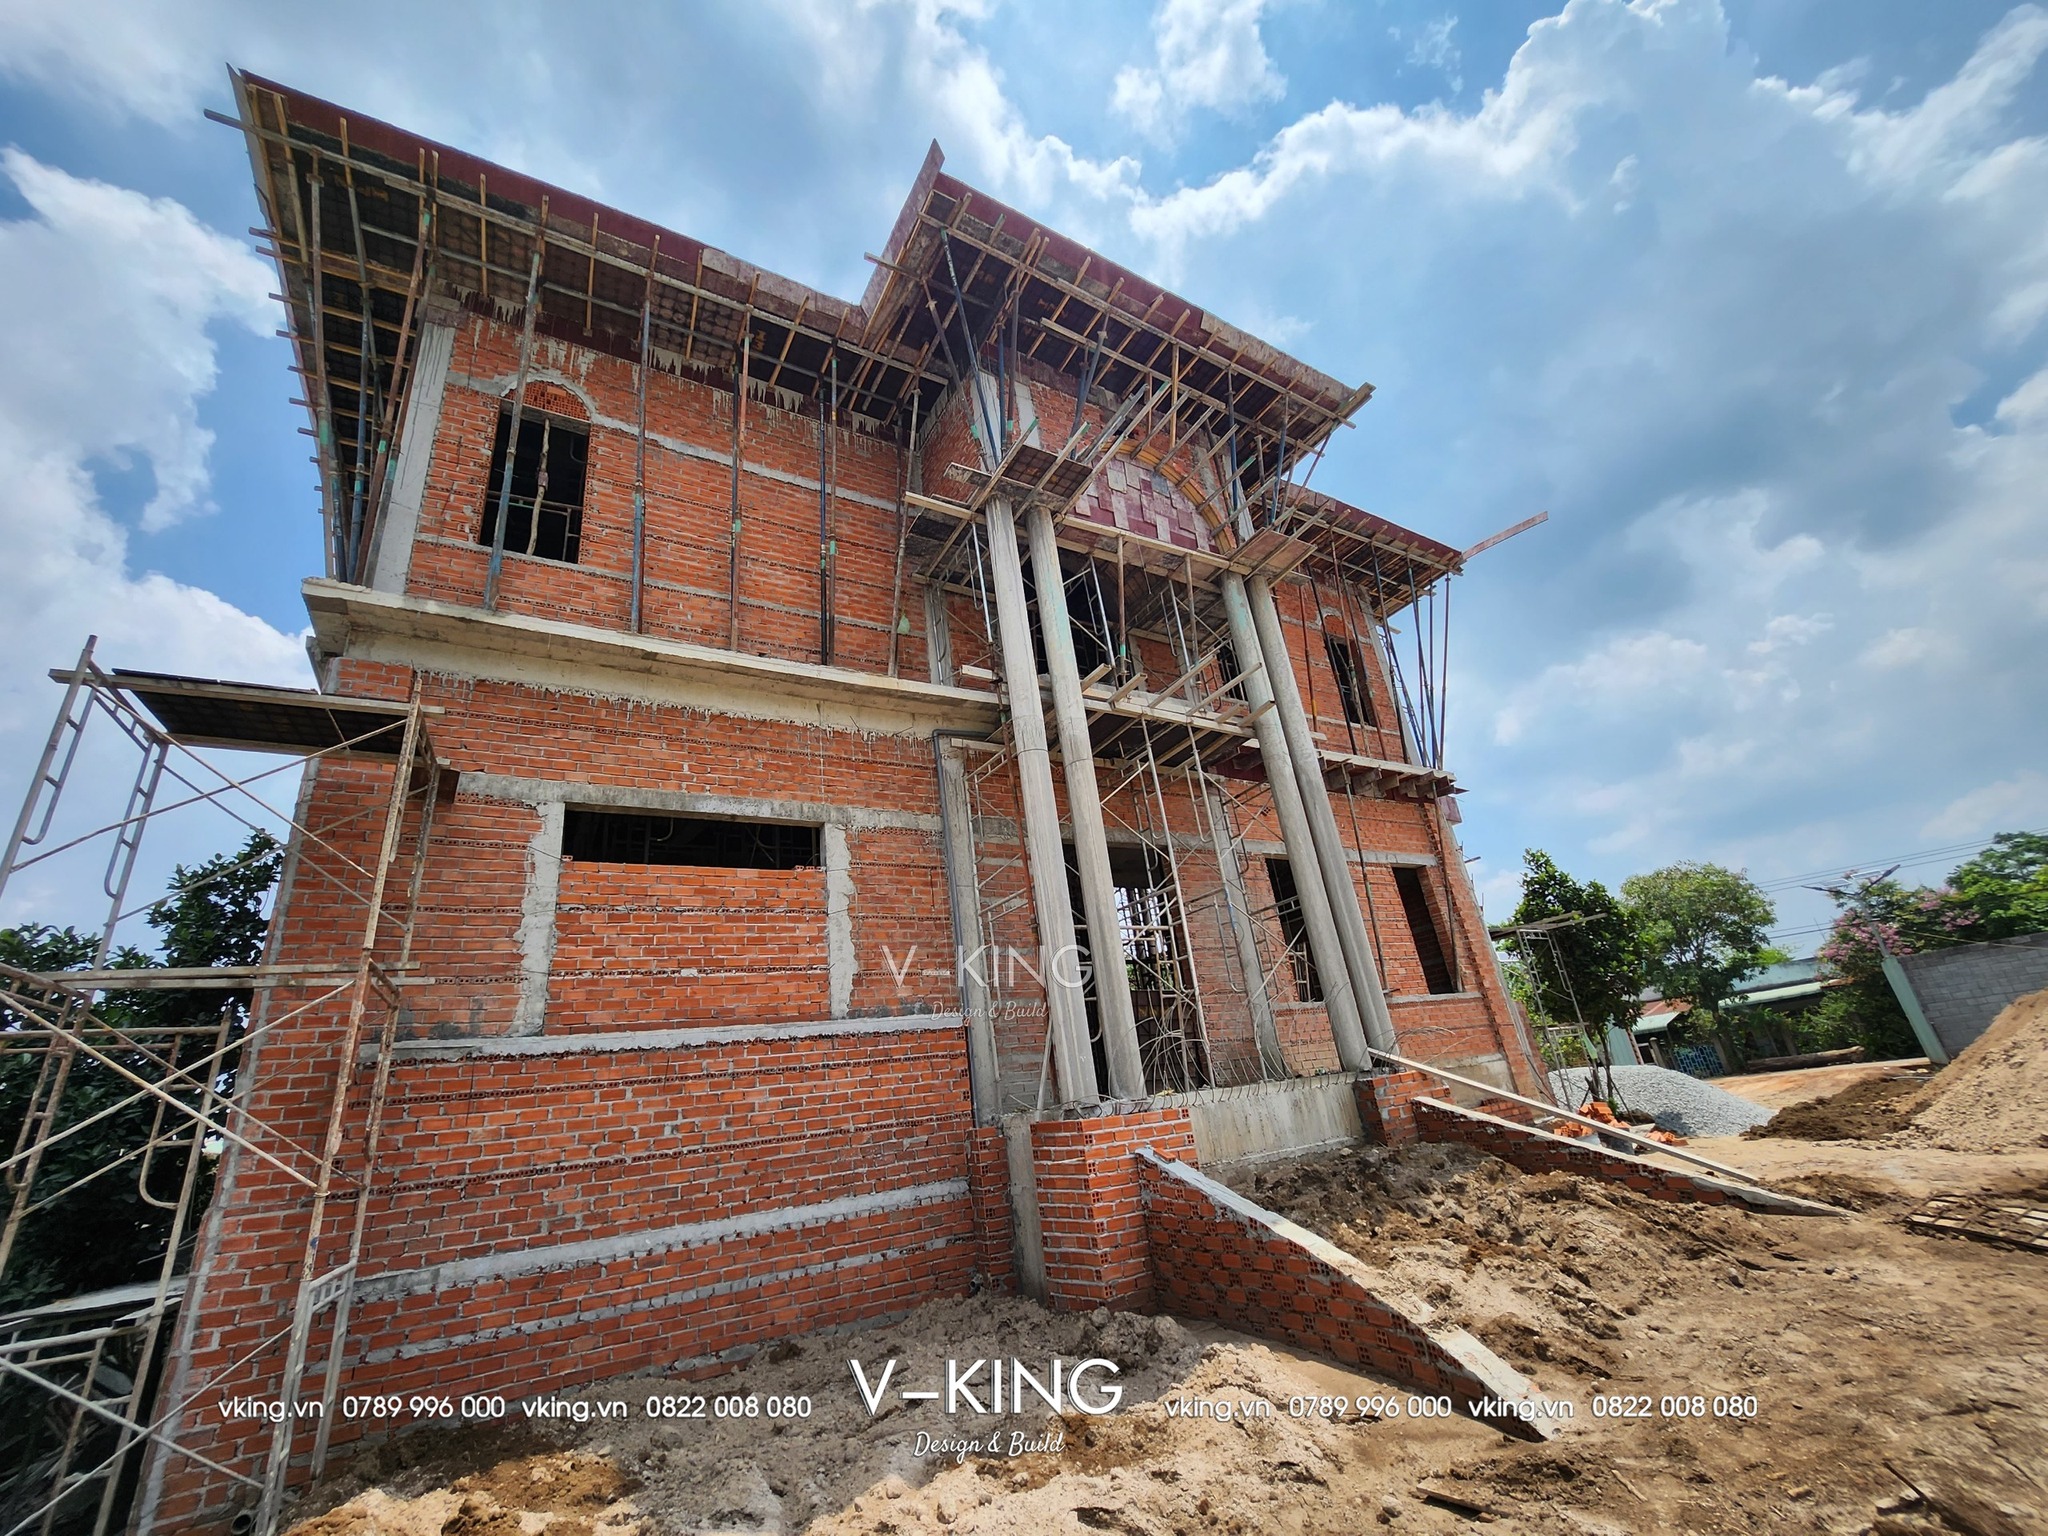 Kiến trúc Vking xây nhà trọn gói tại hcm